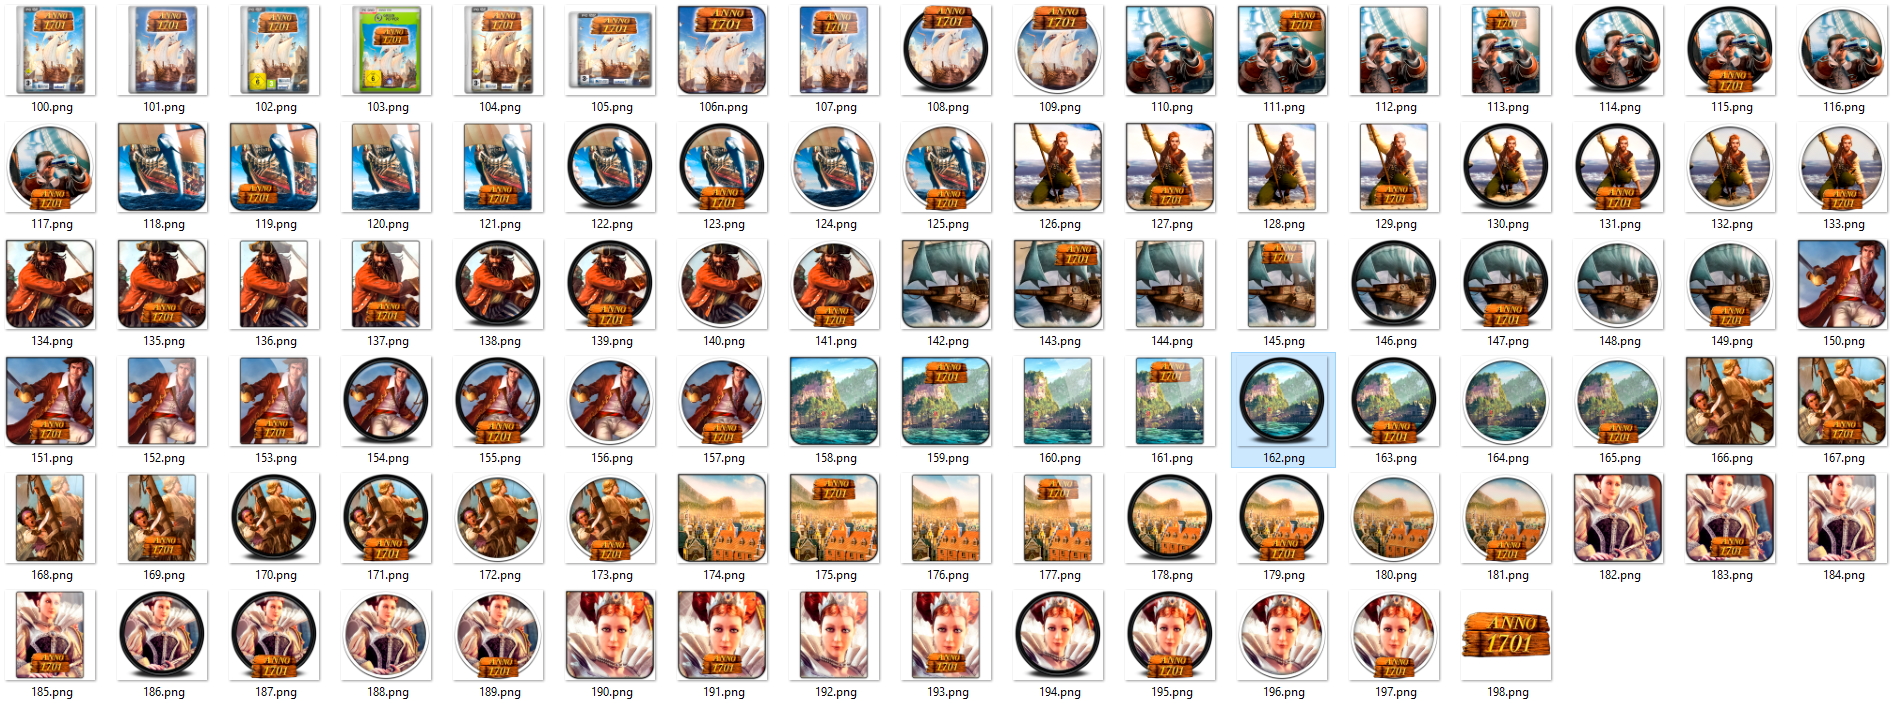 Иконки из набора к игре Anno 1701